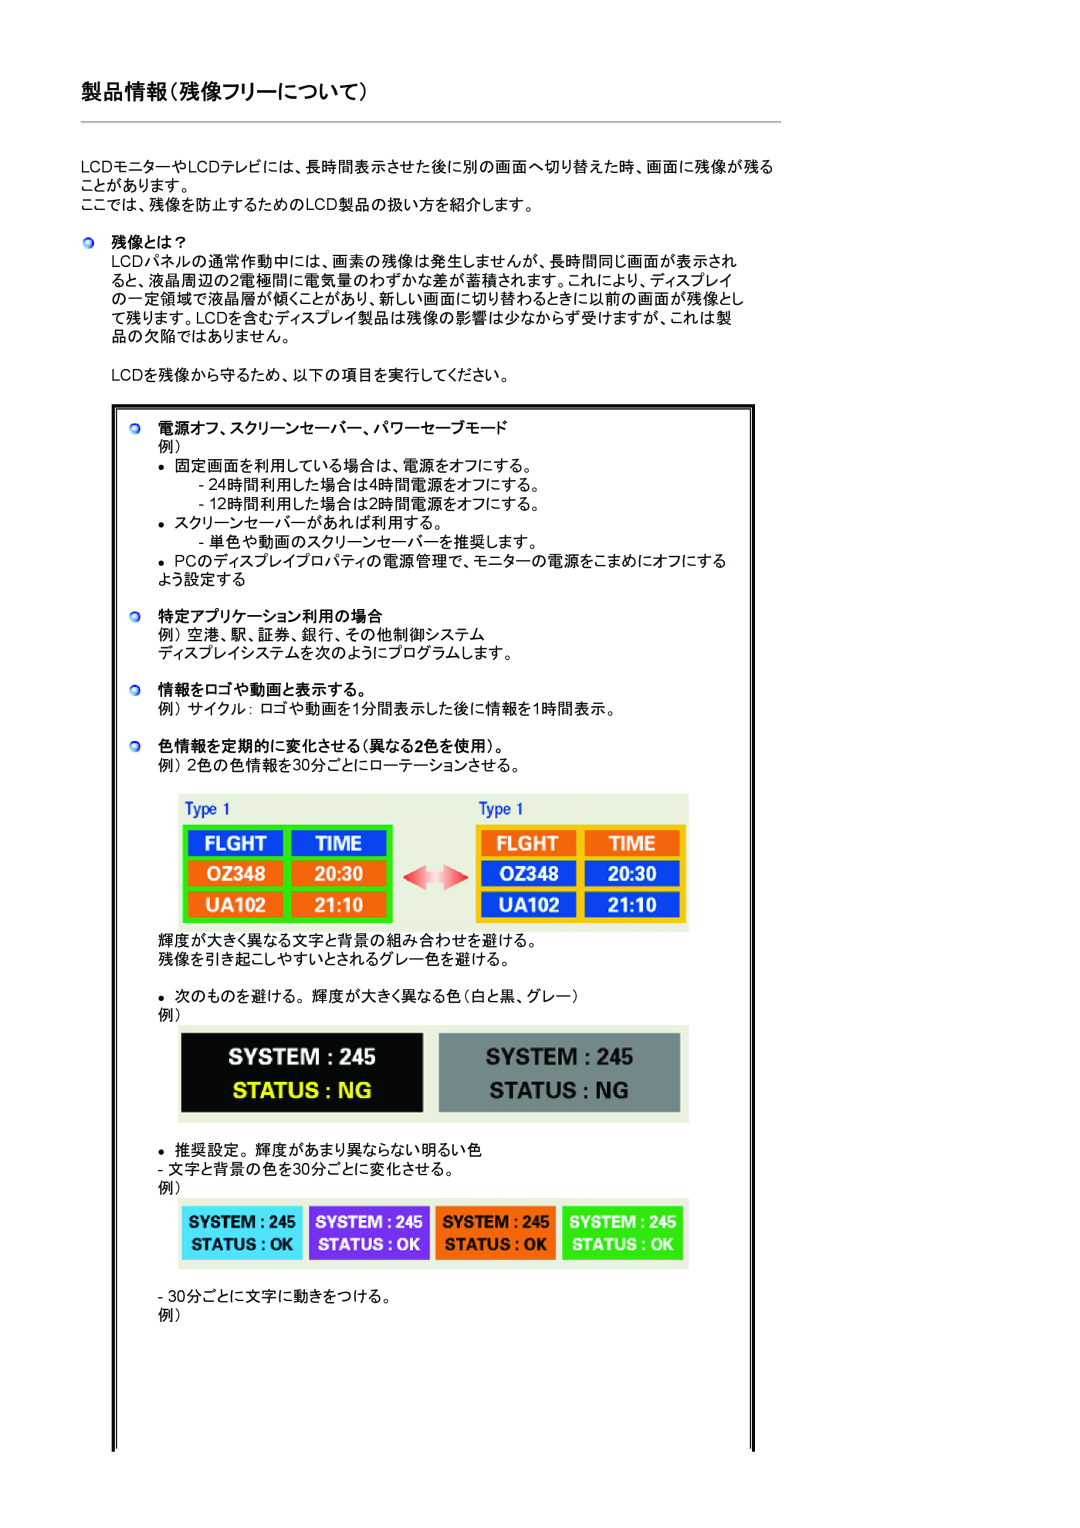 Samsung LS19CIBQSV/XSJ, LS19CIBQS1/XSJ 製品情報（残像フリーについて）, 残像とは？, 特定アプリケーション利用の場合, 情報をロゴや動画と表示する。, 色情報を定期的に変化させる（異なる2色を使用）。 